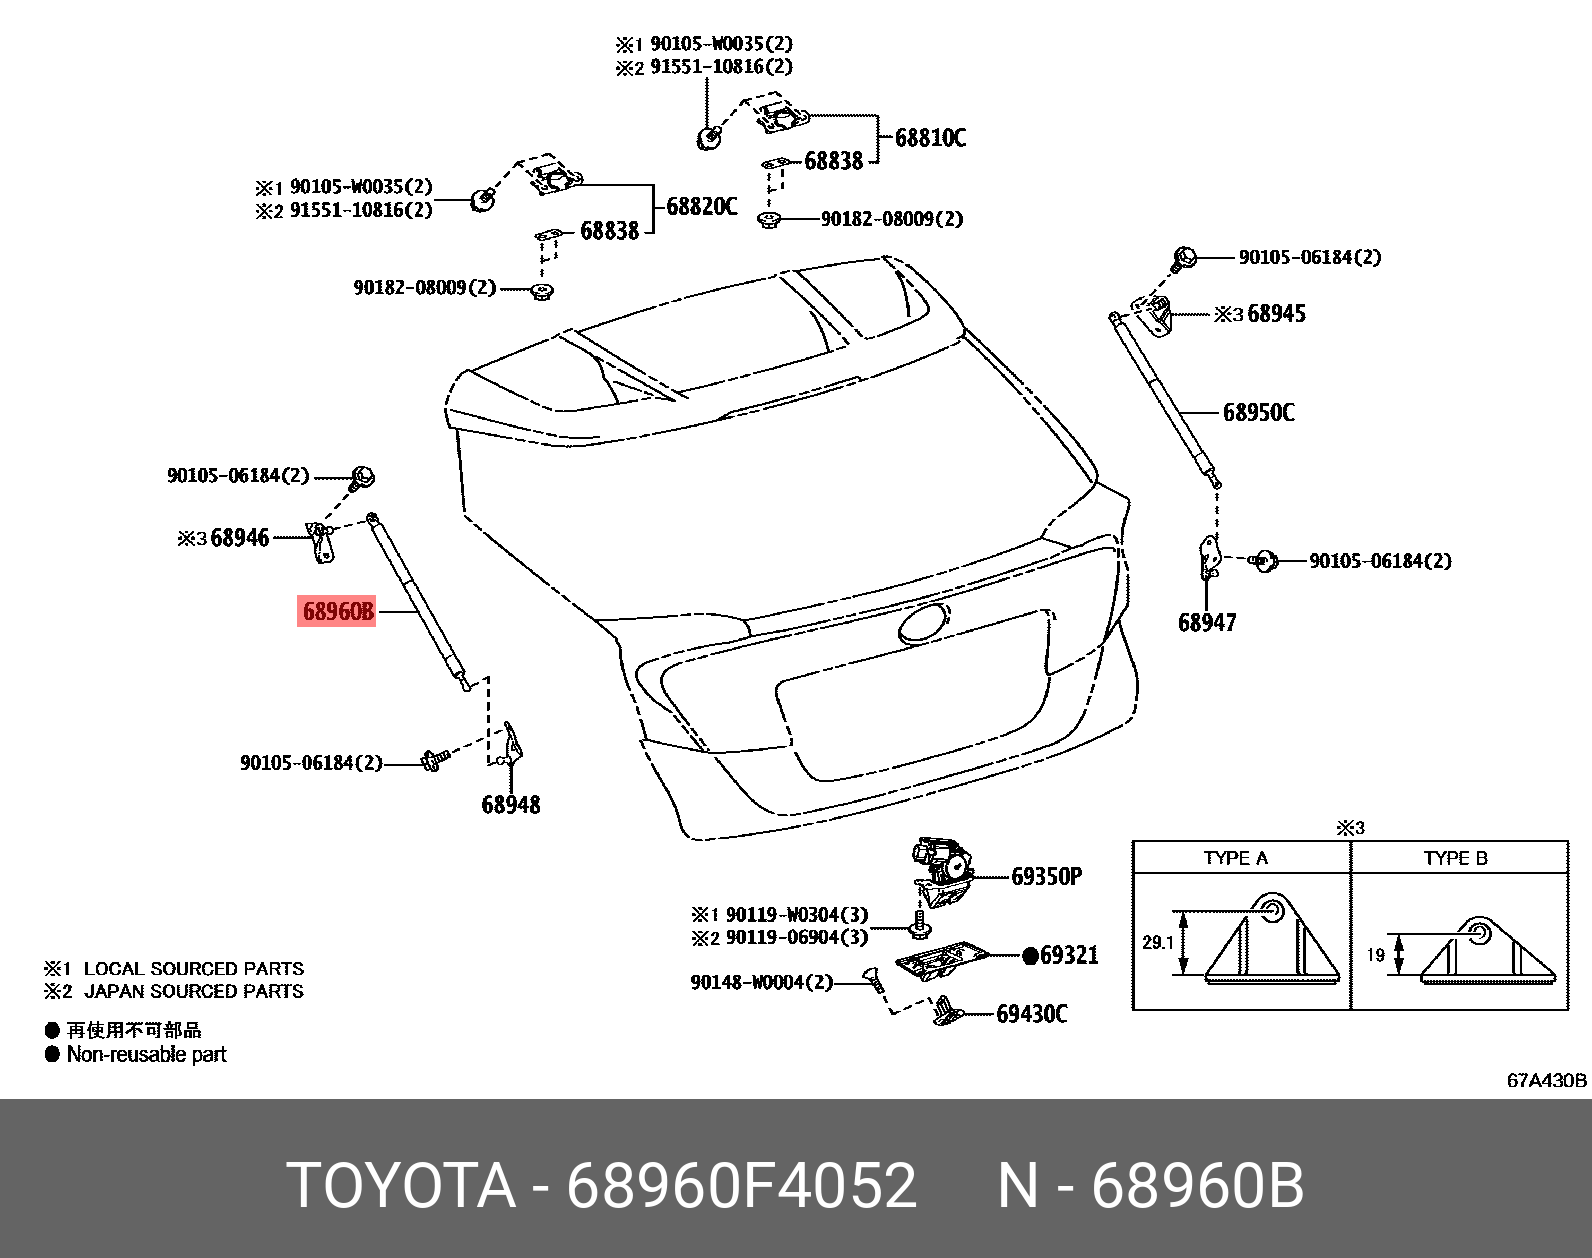 стойка амортизатор задней двери багажника - Toyota 68960F4052